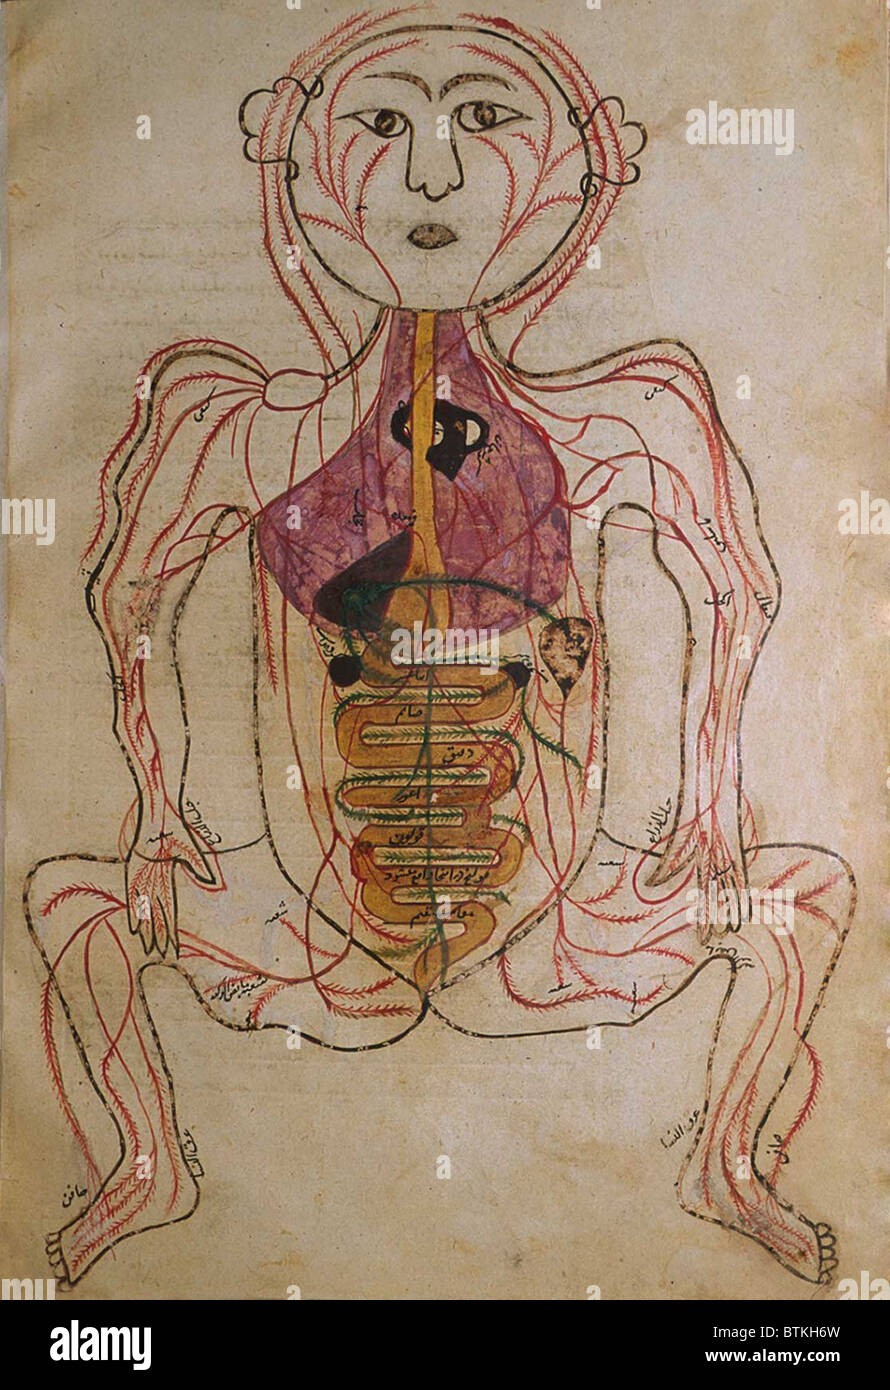 La circolazione umana sistema, da MANSUR'S ANATOMY, creato dal persiano di studioso e di medico, Mansur ibn Ilyas (ca. 1370-1423). Le arterie sono mostrati con gli organi interni indicato in opaco acquerelli. Ca. Xv o inizio del XVI secolo. Foto Stock